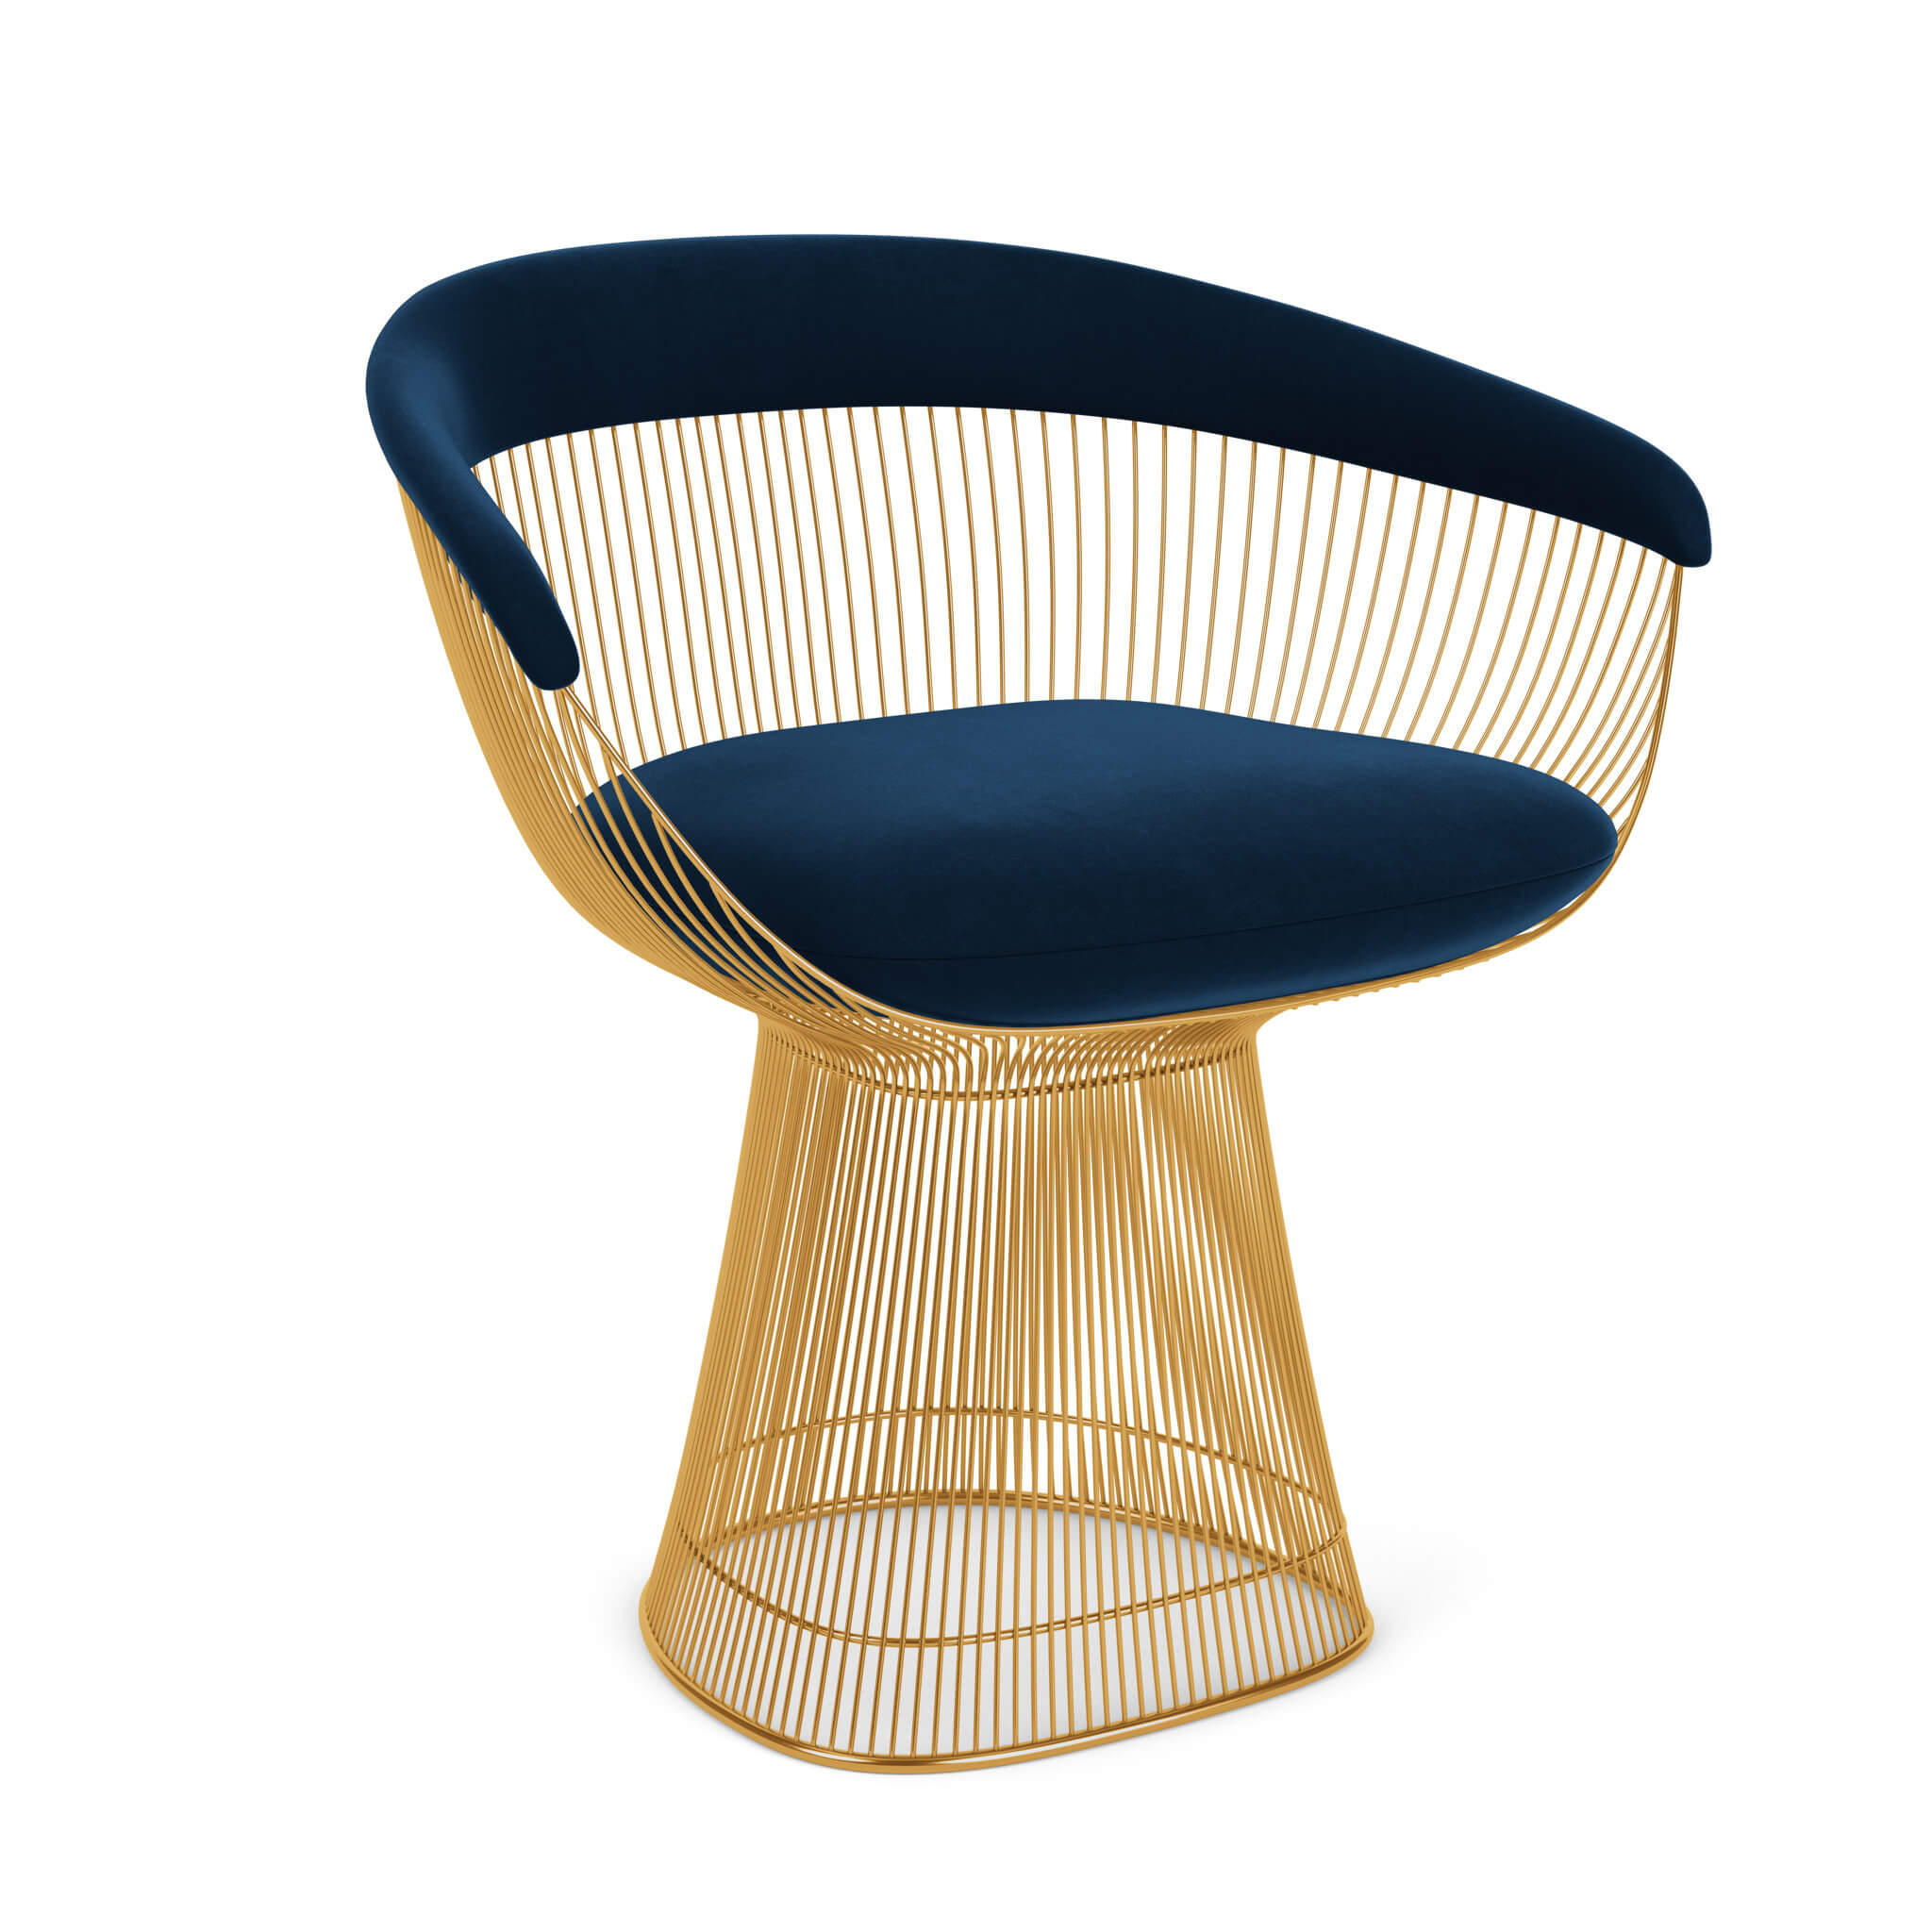 Krzesło Platner Side Chair marki knoll w wersji ze złotą podstawą i granatową tapicerką.